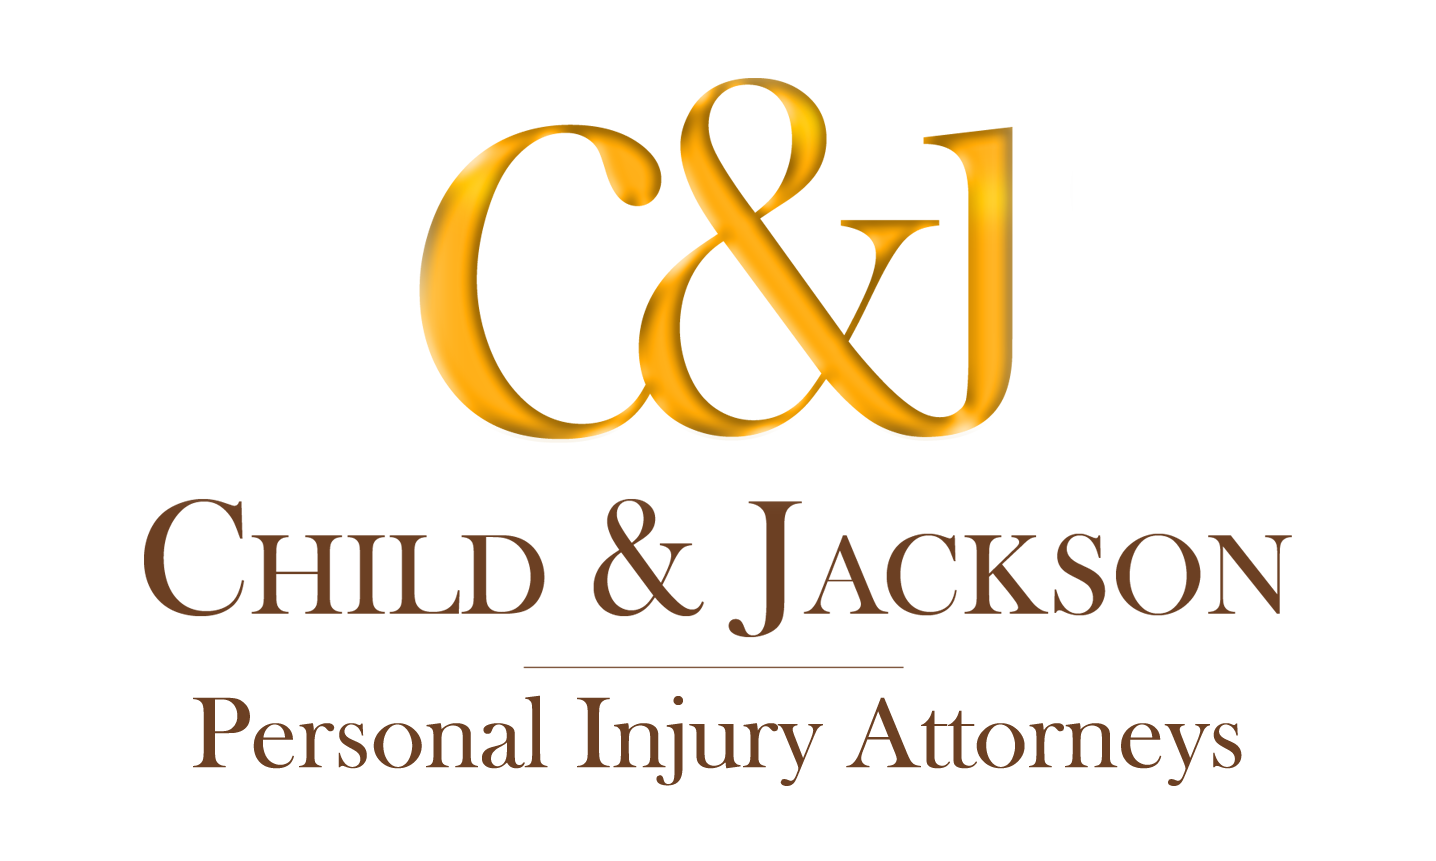 Child & Jackson, A Professional Law Corporation | 101 Parkshore Dr., Ste 205, Folsom, CA, 95630 | +1 (916) 932-2170